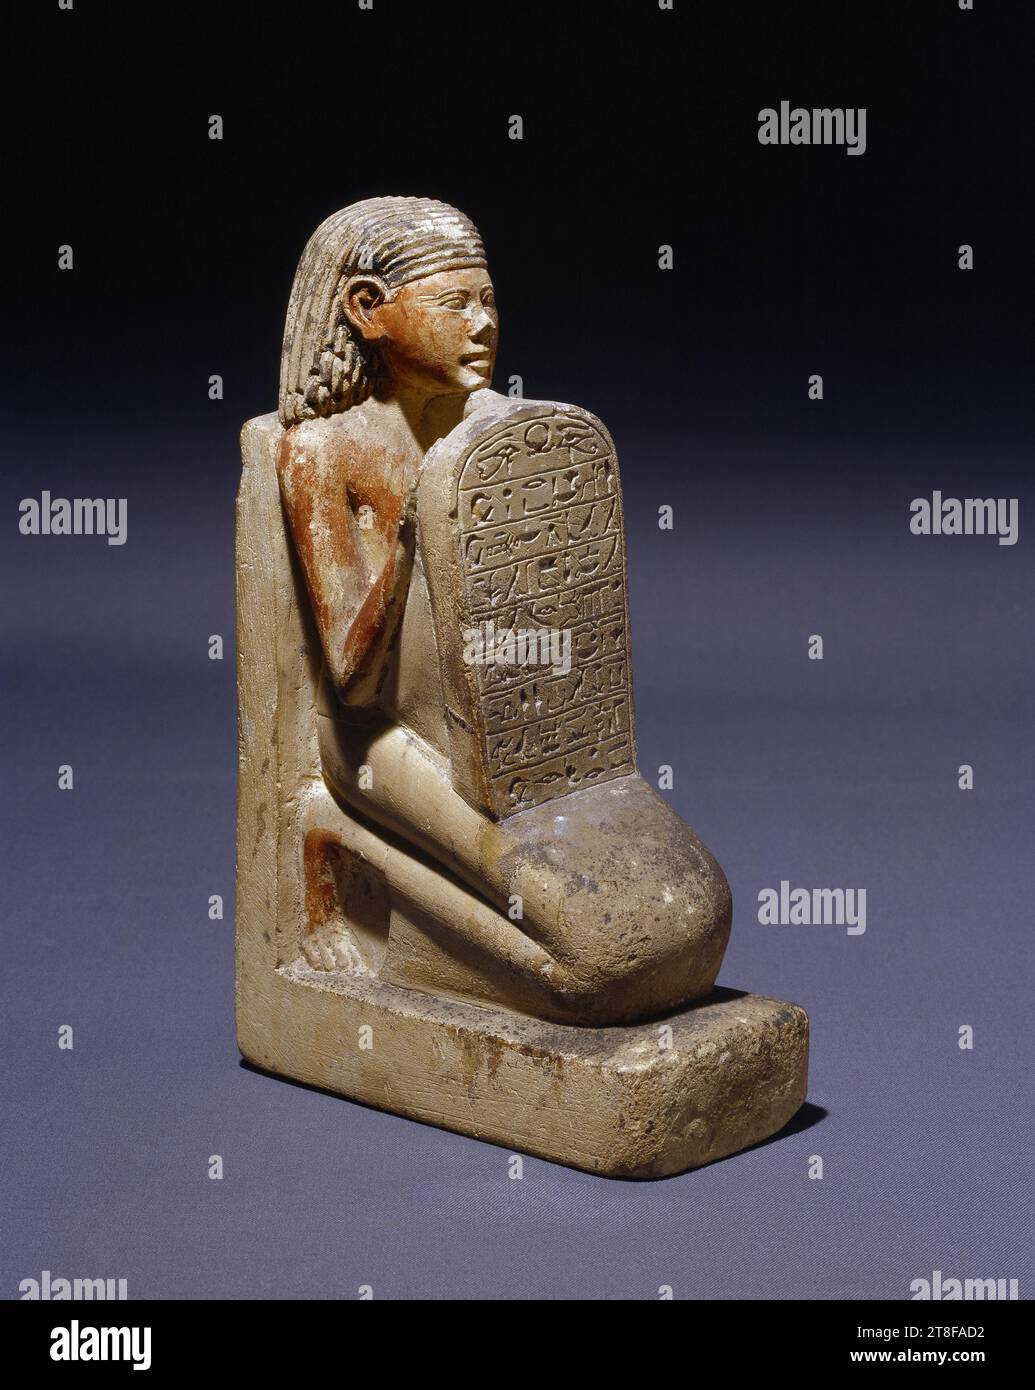 Statuette eines knienden Mannes mit einer Stele, 1500 v. Chr. - 1295 v. Chr., Skulptur, Statuette, die Statuette stellt einen knienden Mann mit leicht erhöhtem Gesicht dar. Mit seinen Händen stützt er eine Stele auf seinem Oberschenkel. Auf der Stele ist eine Inschrift zu sehen, die eine Hommage an den Sonnengott Ra ausdrückt. Die Rückseite der Skulptur zeigt eine Formel, die von einem Opfer für die Götter Amon-Ra und Osiris erzählt. Während der 18. Dynastie (ca. 1550-1300 v. Chr.) Stockfoto